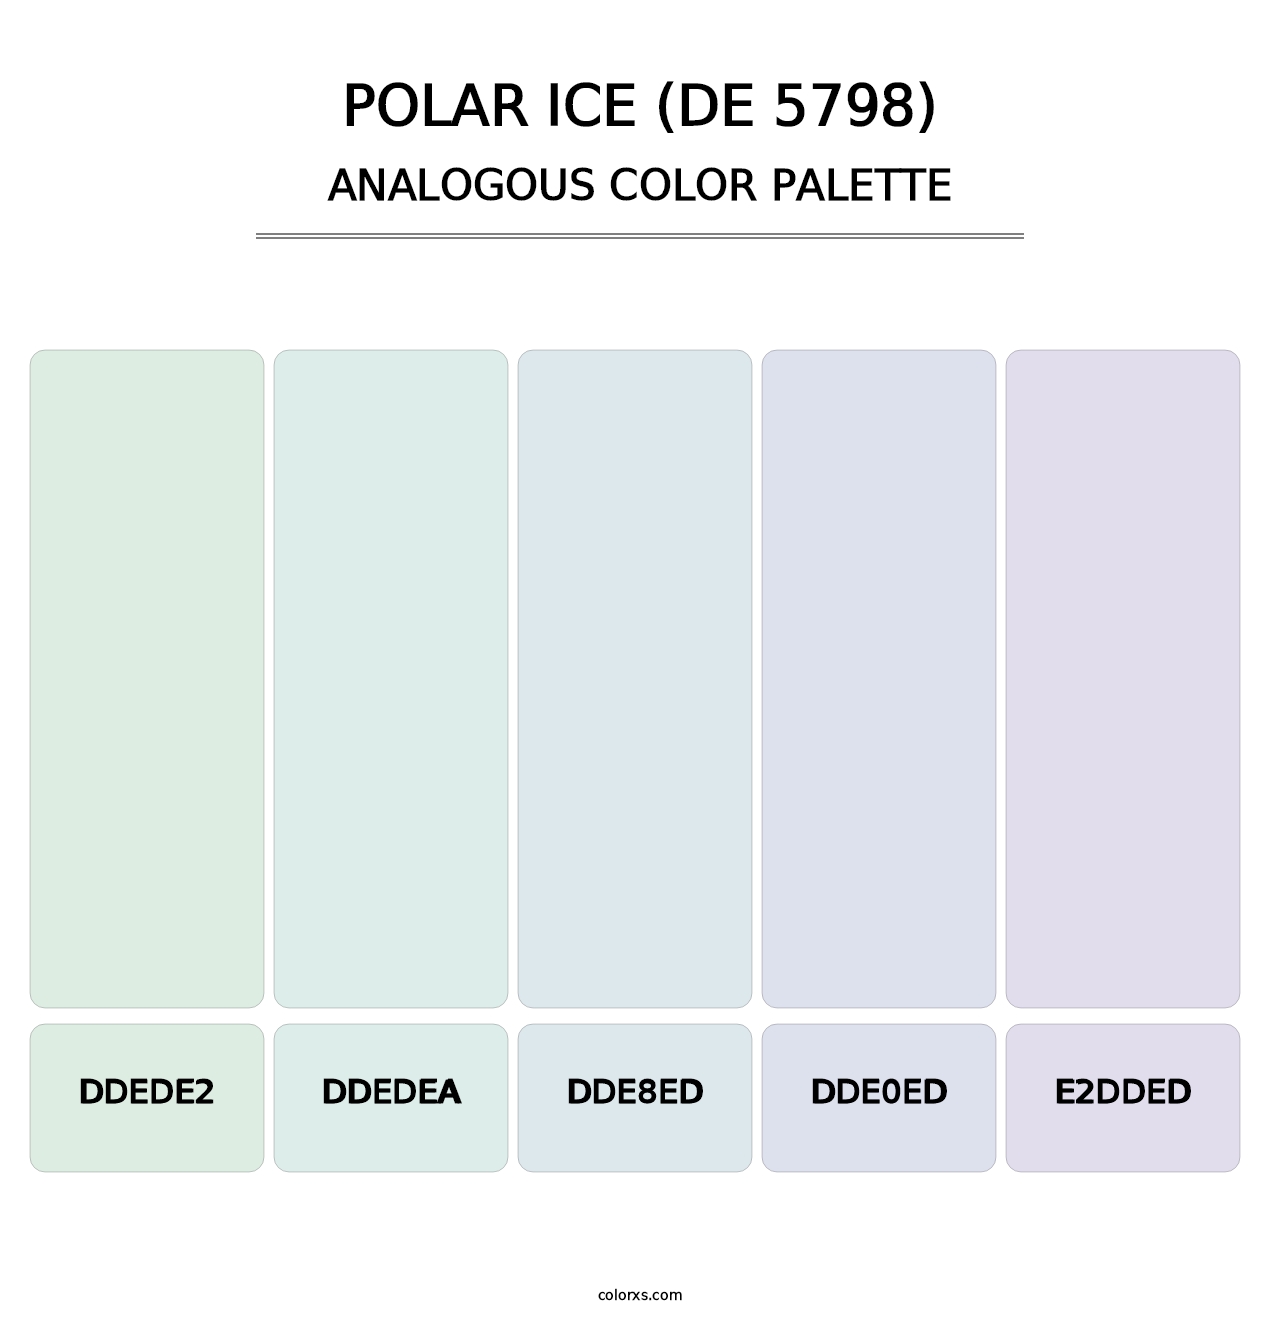 Polar Ice (DE 5798) - Analogous Color Palette